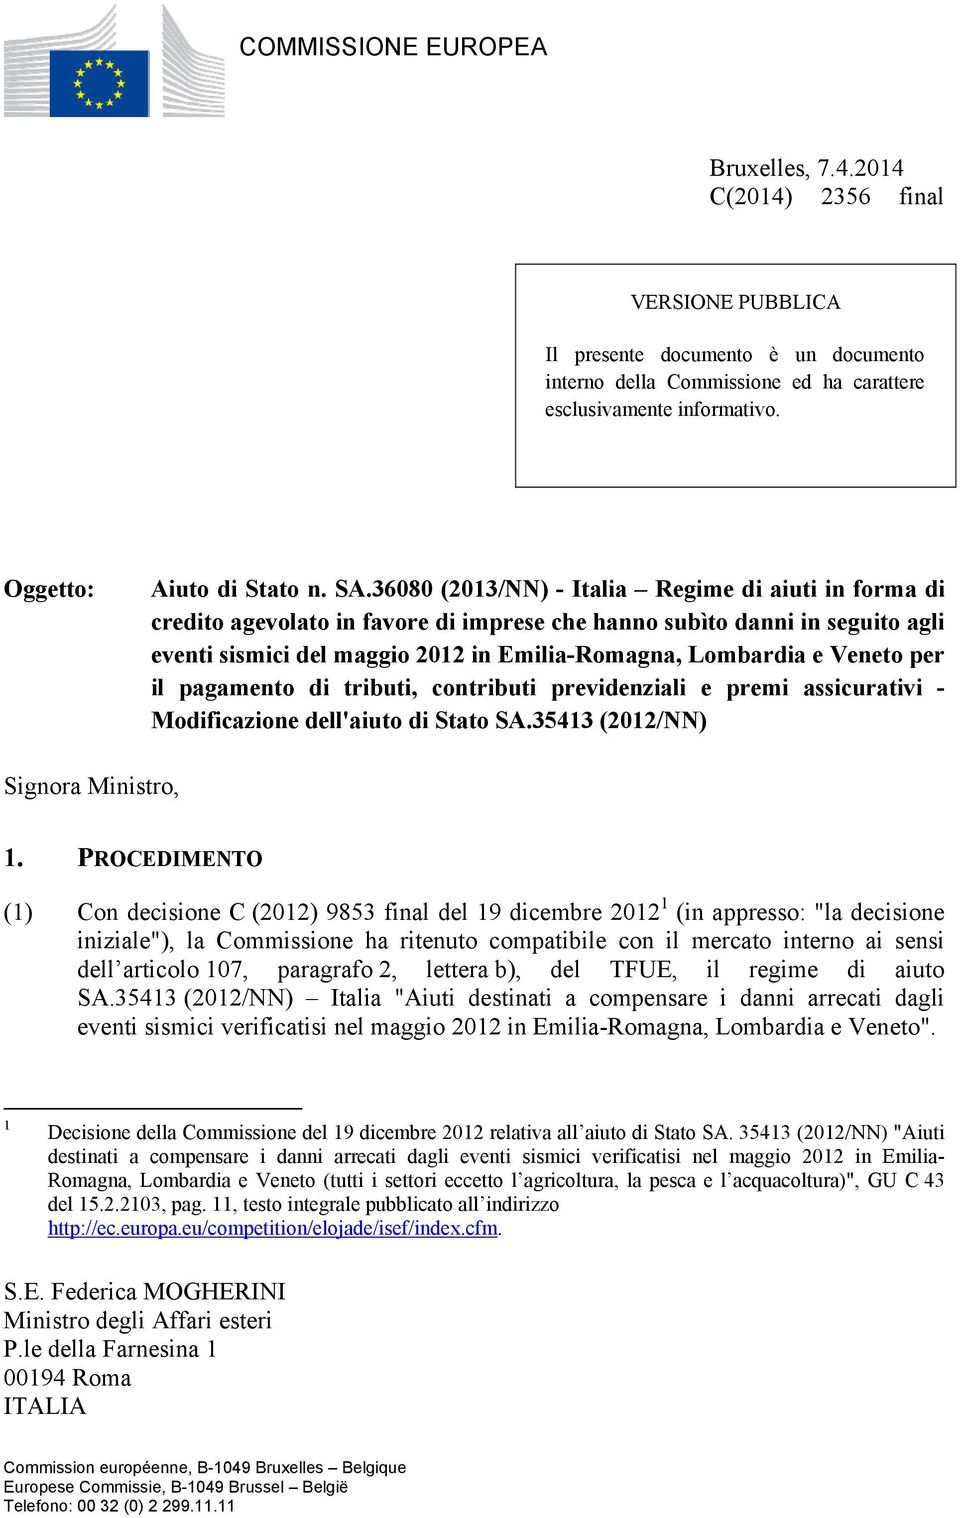 36080 (2013/NN) - Italia Regime di aiuti in forma di credito agevolato in favore di imprese che hanno subìto danni in seguito agli eventi sismici del maggio 2012 in Emilia-Romagna, Lombardia e Veneto